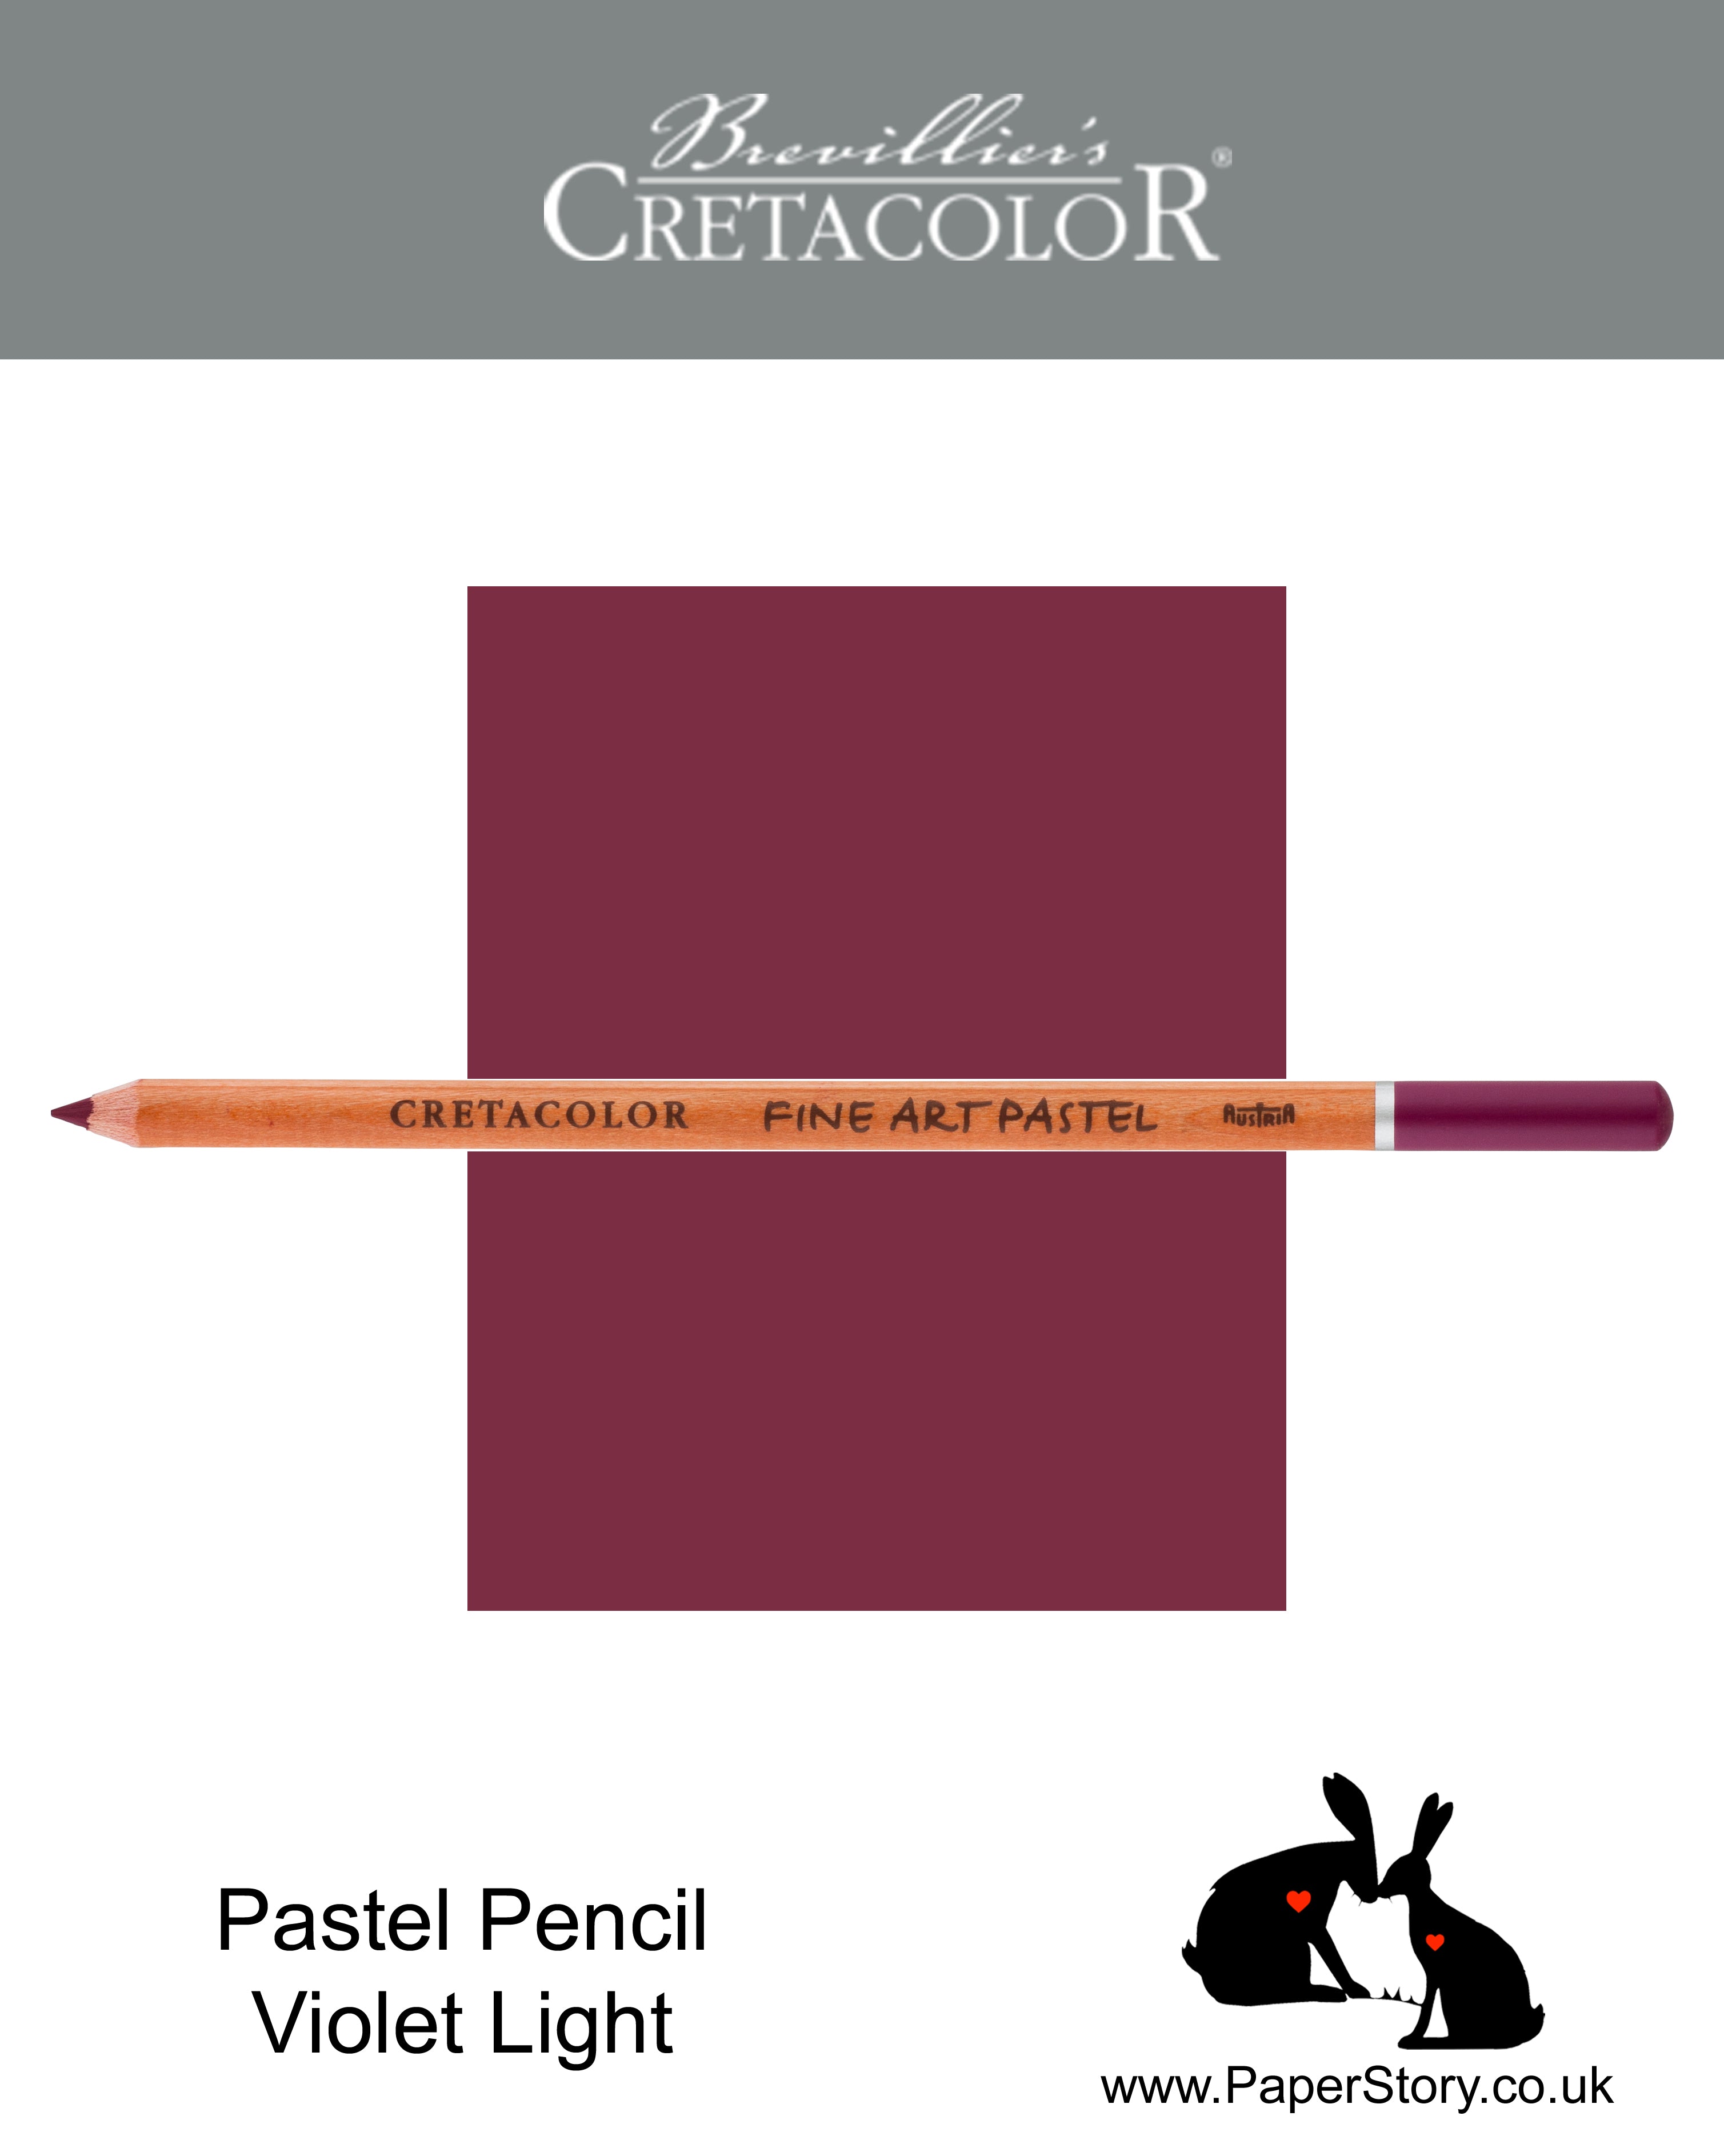 Cretacolor 471 25 Artists Pastel Pencil Violet Light